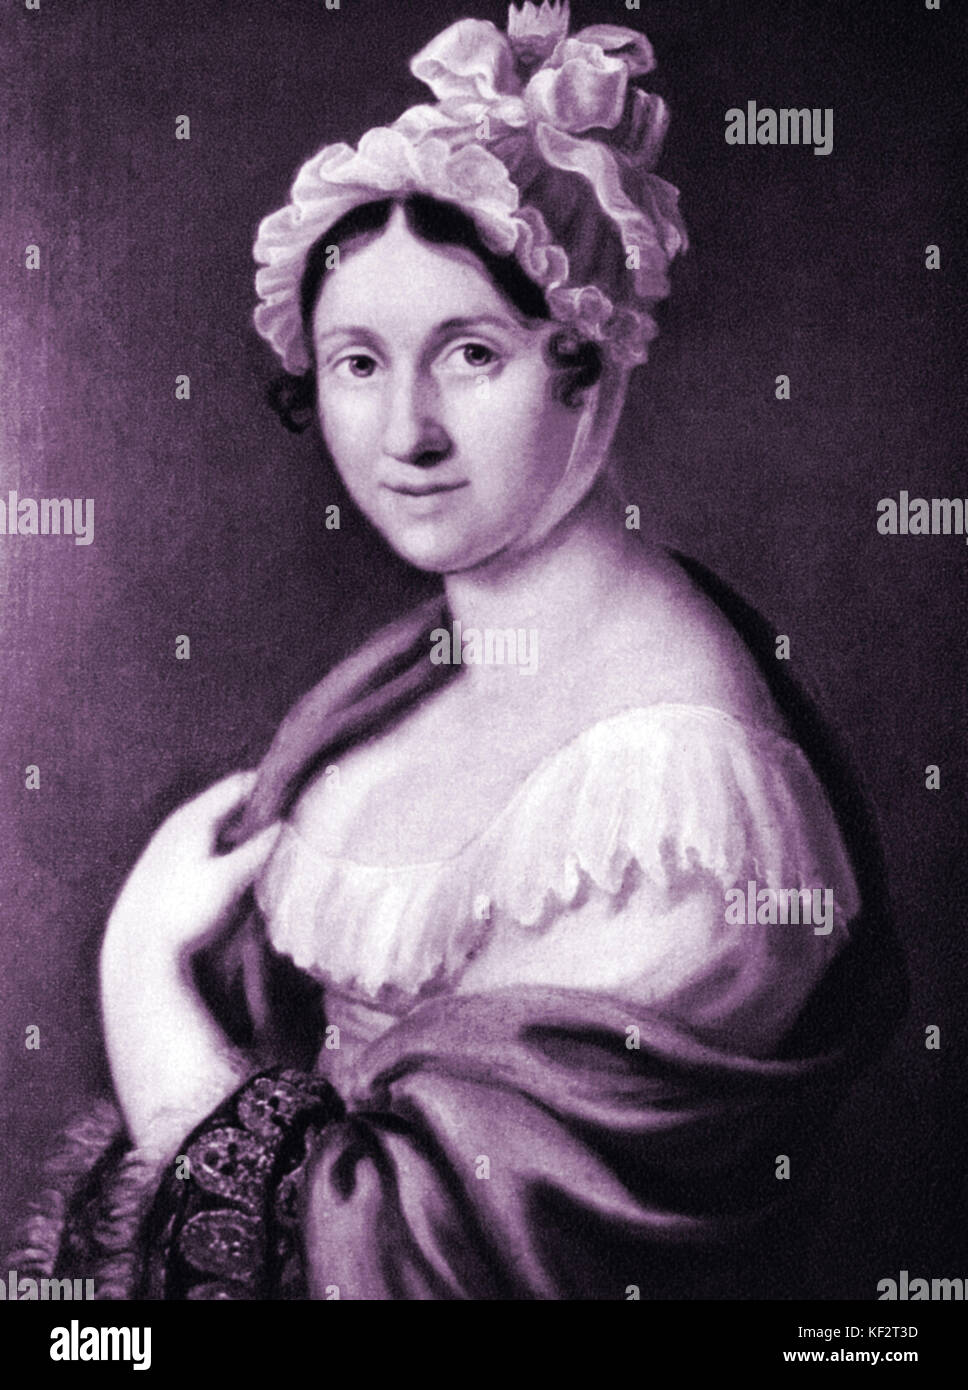 WAGNER della madre, Johanna Rosine (ex Bertz) del compositore tedesco & autore, 1813-1883 Foto Stock